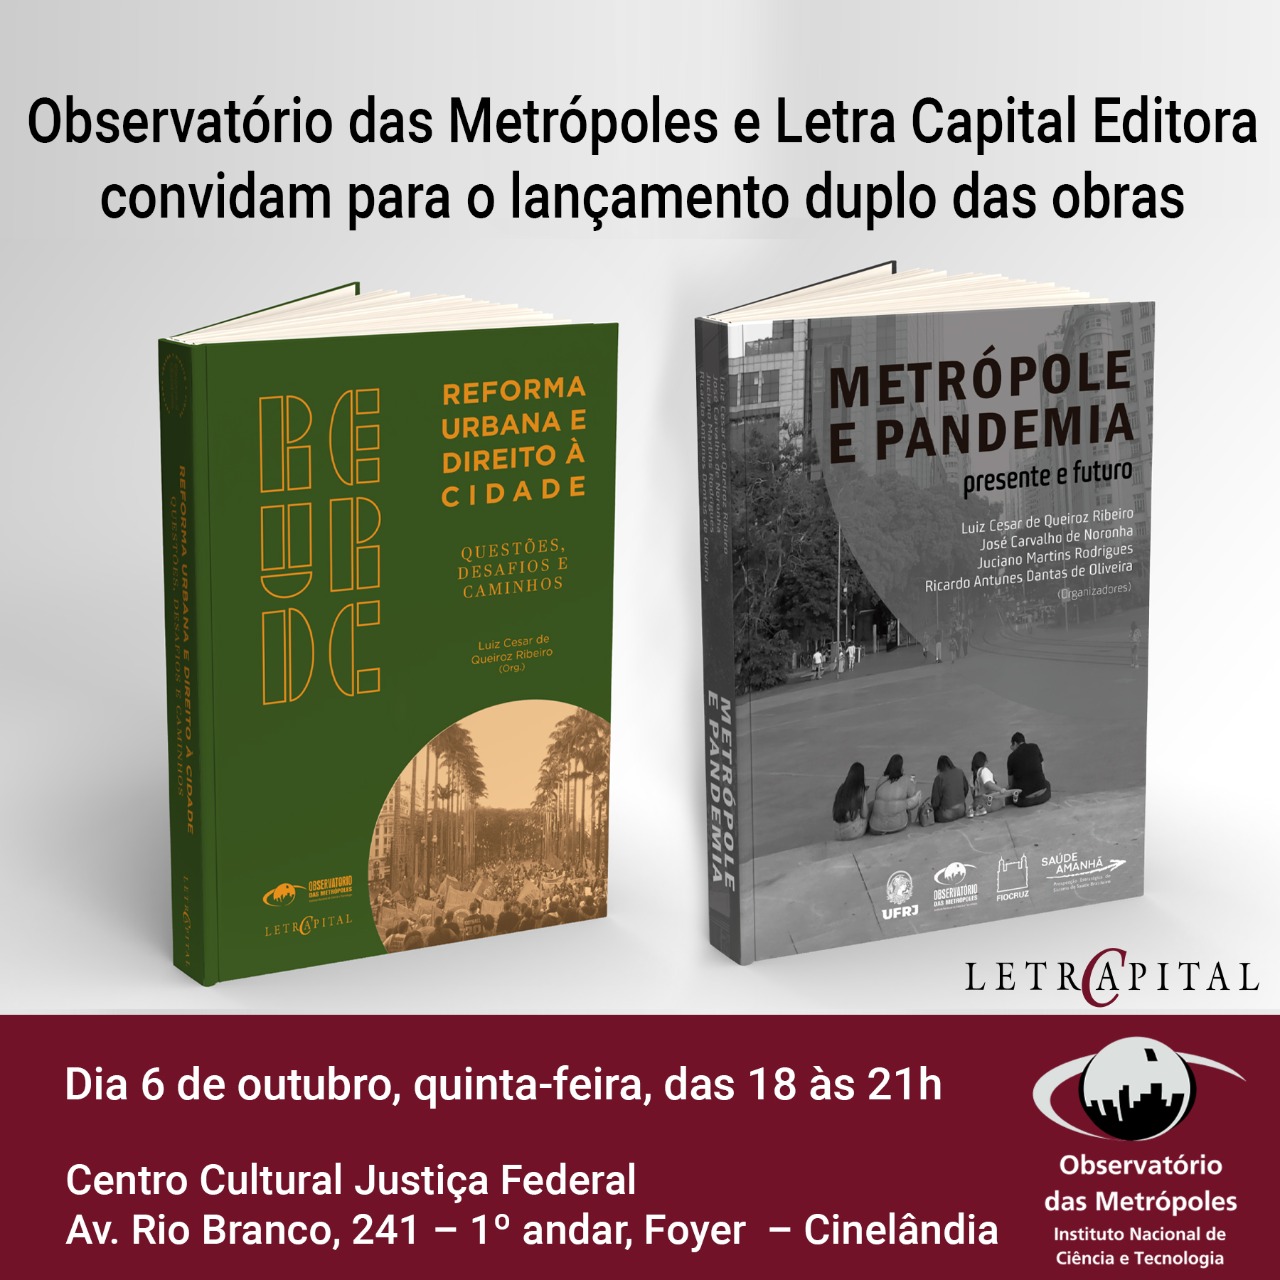 Lançamentos | Livro nacional do projeto “Reforma Urbana e Direito à Cidade” e “Metrópole e Pandemia”